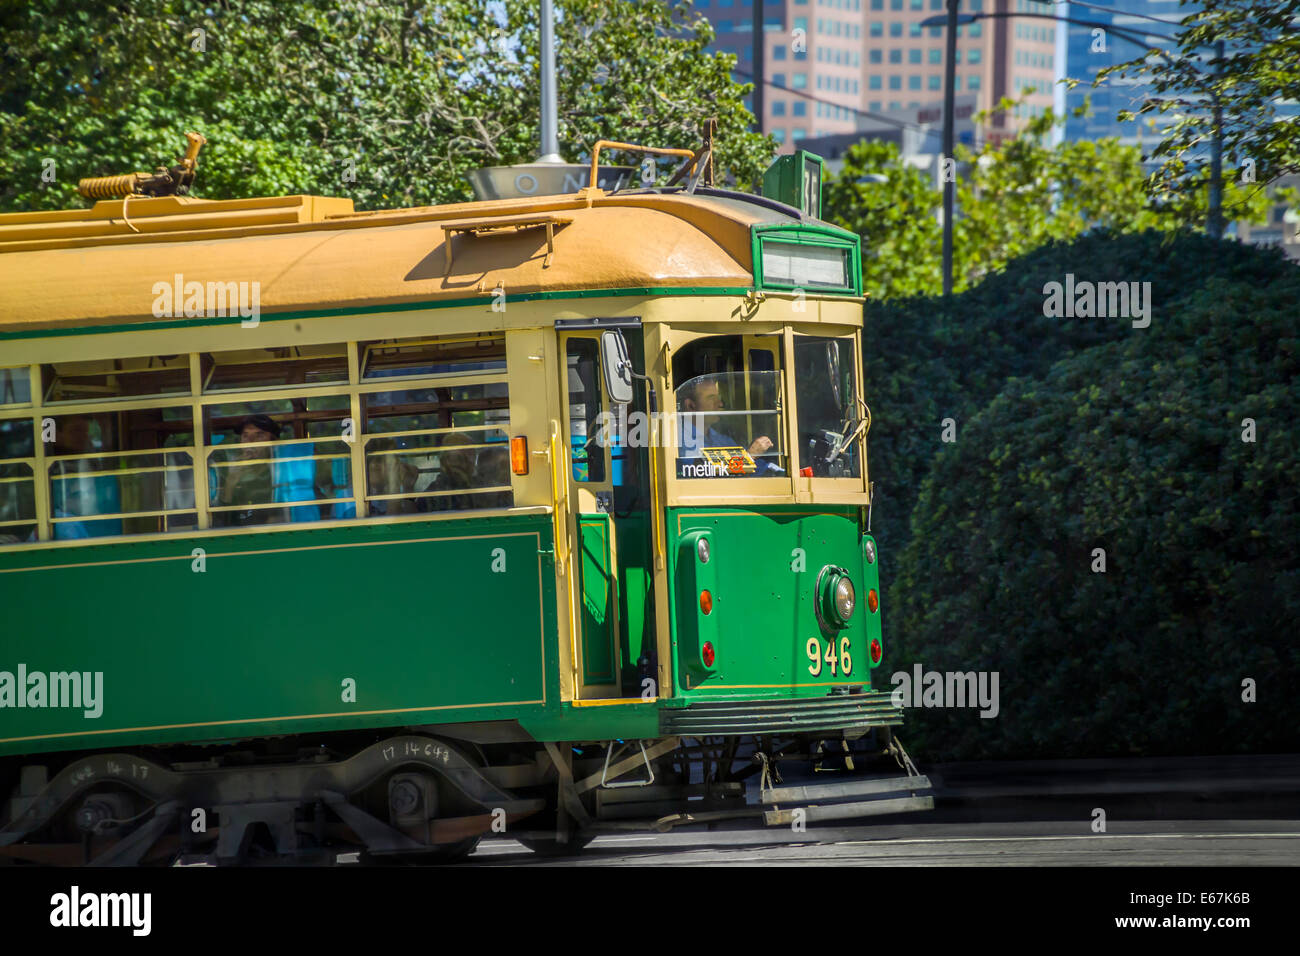 Tramway de Melbourne iconique traditionnel vert voyager jusqu'à une colline vers le centre-ville de Melbourne, Melbourne Australlia Banque D'Images